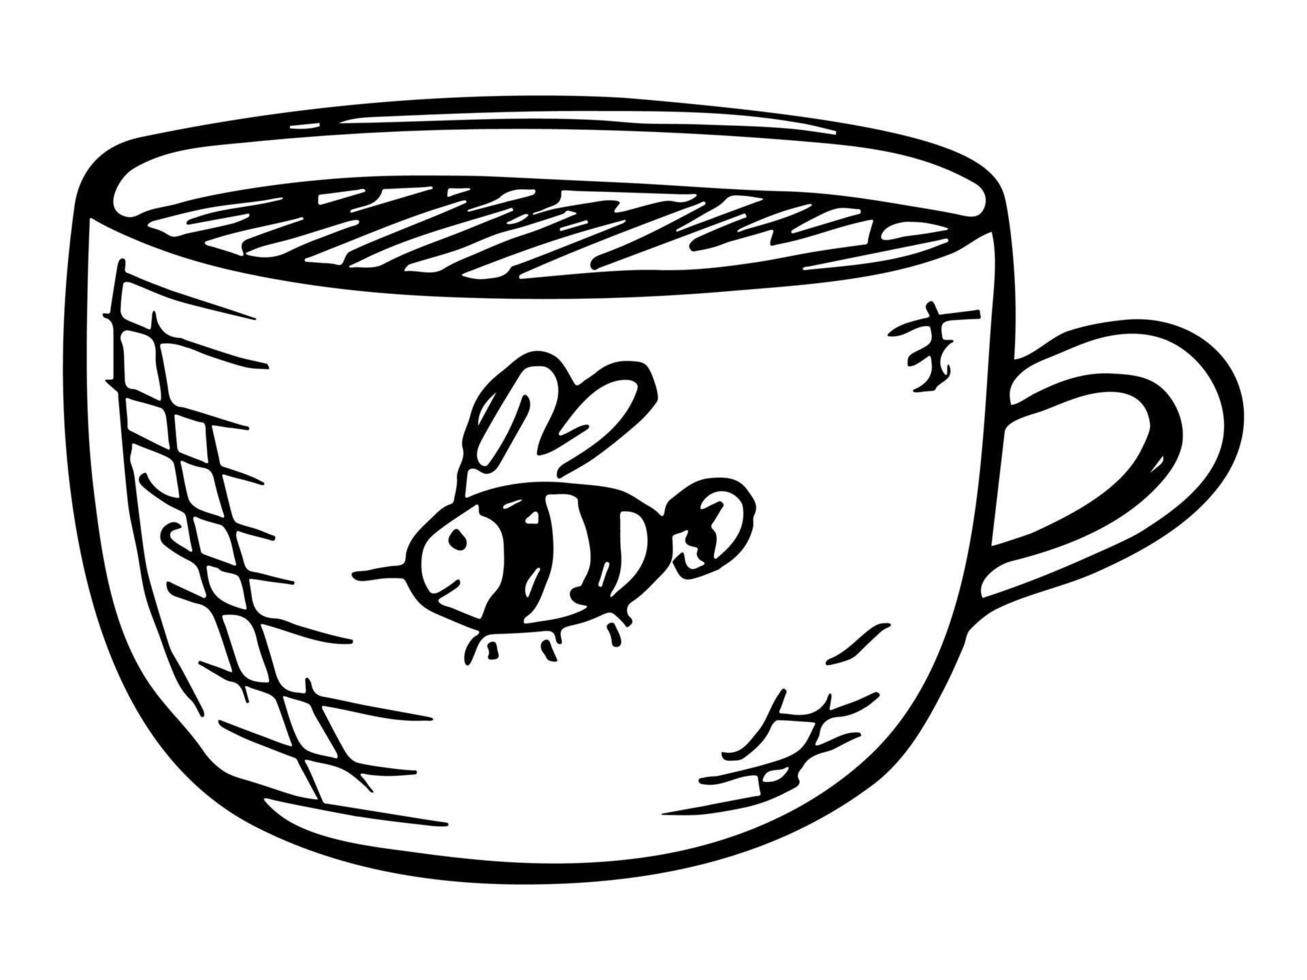 jolie tasse d'illustration de thé ou de café. clipart de tasse simple. griffonnage à la maison confortable vecteur